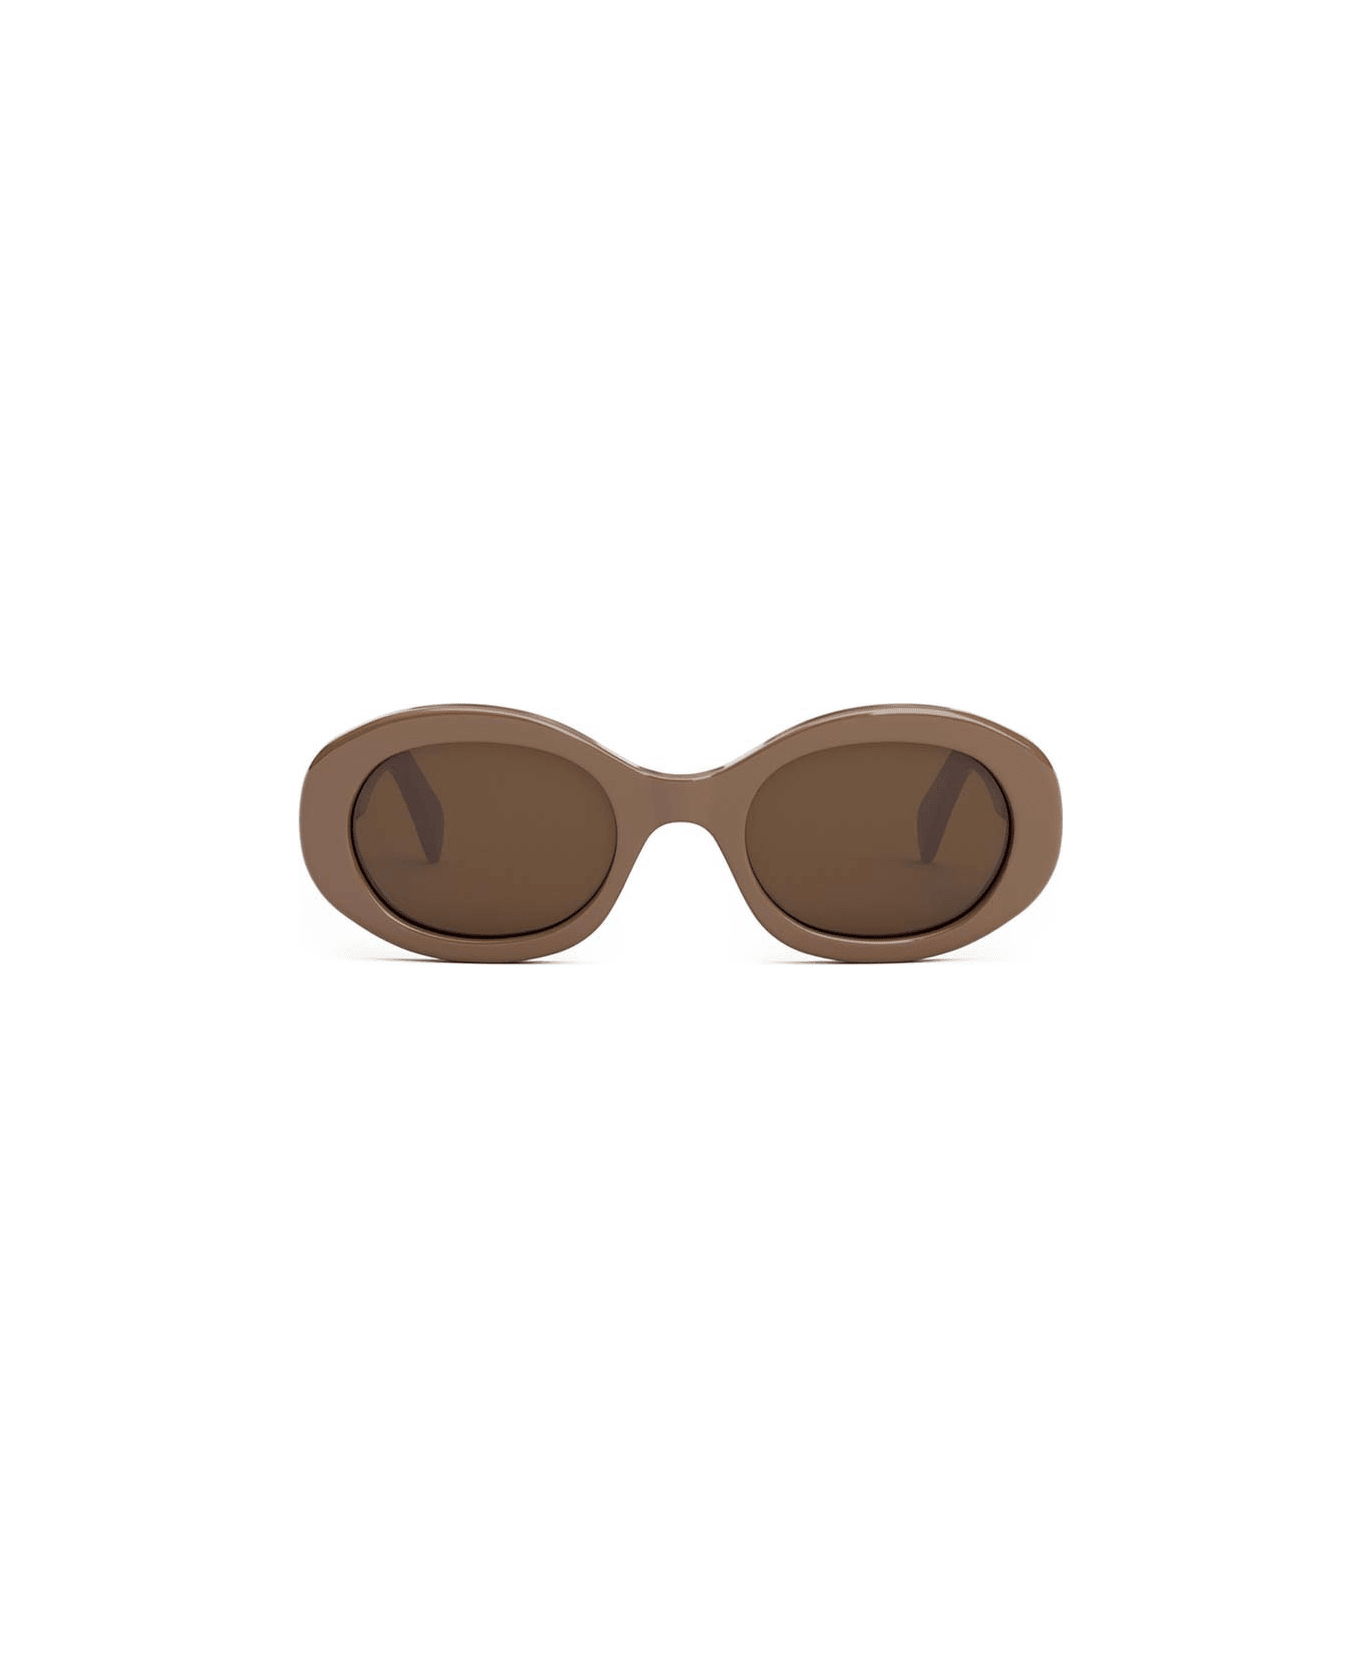 Celine Sunglasses - Caramello/Marrone